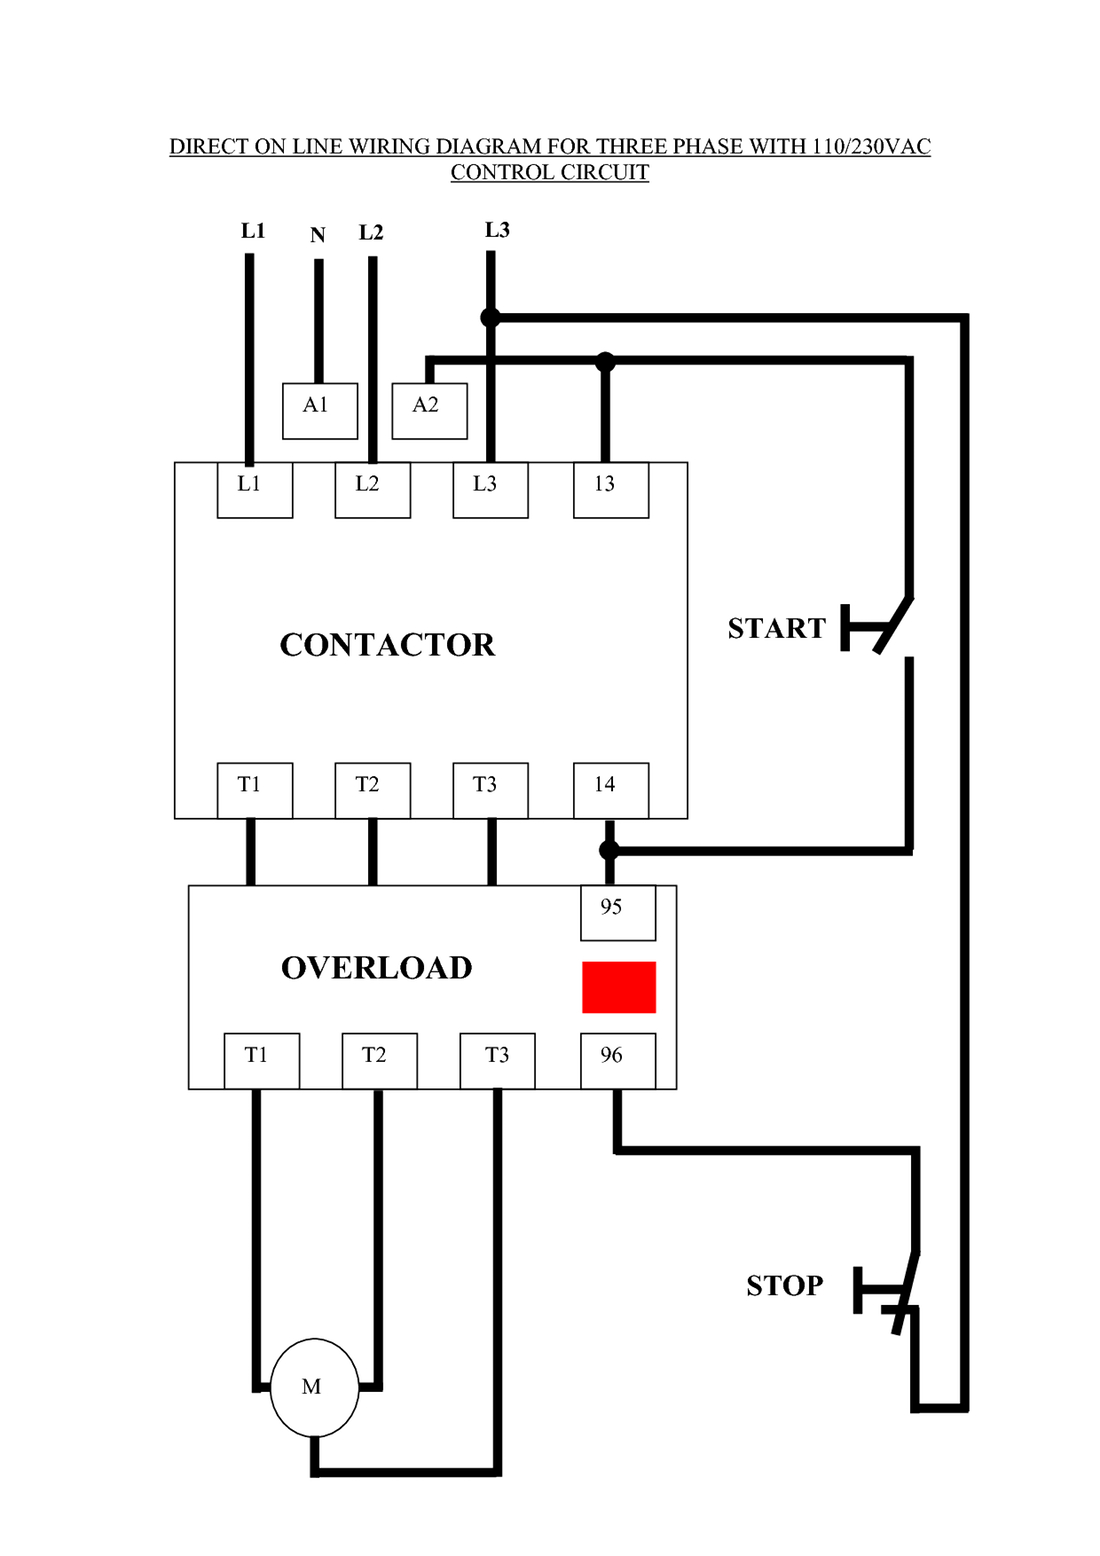 Contactor Wiring Diagram - Wiring Diagrams Lose - Contactor Wiring Diagram